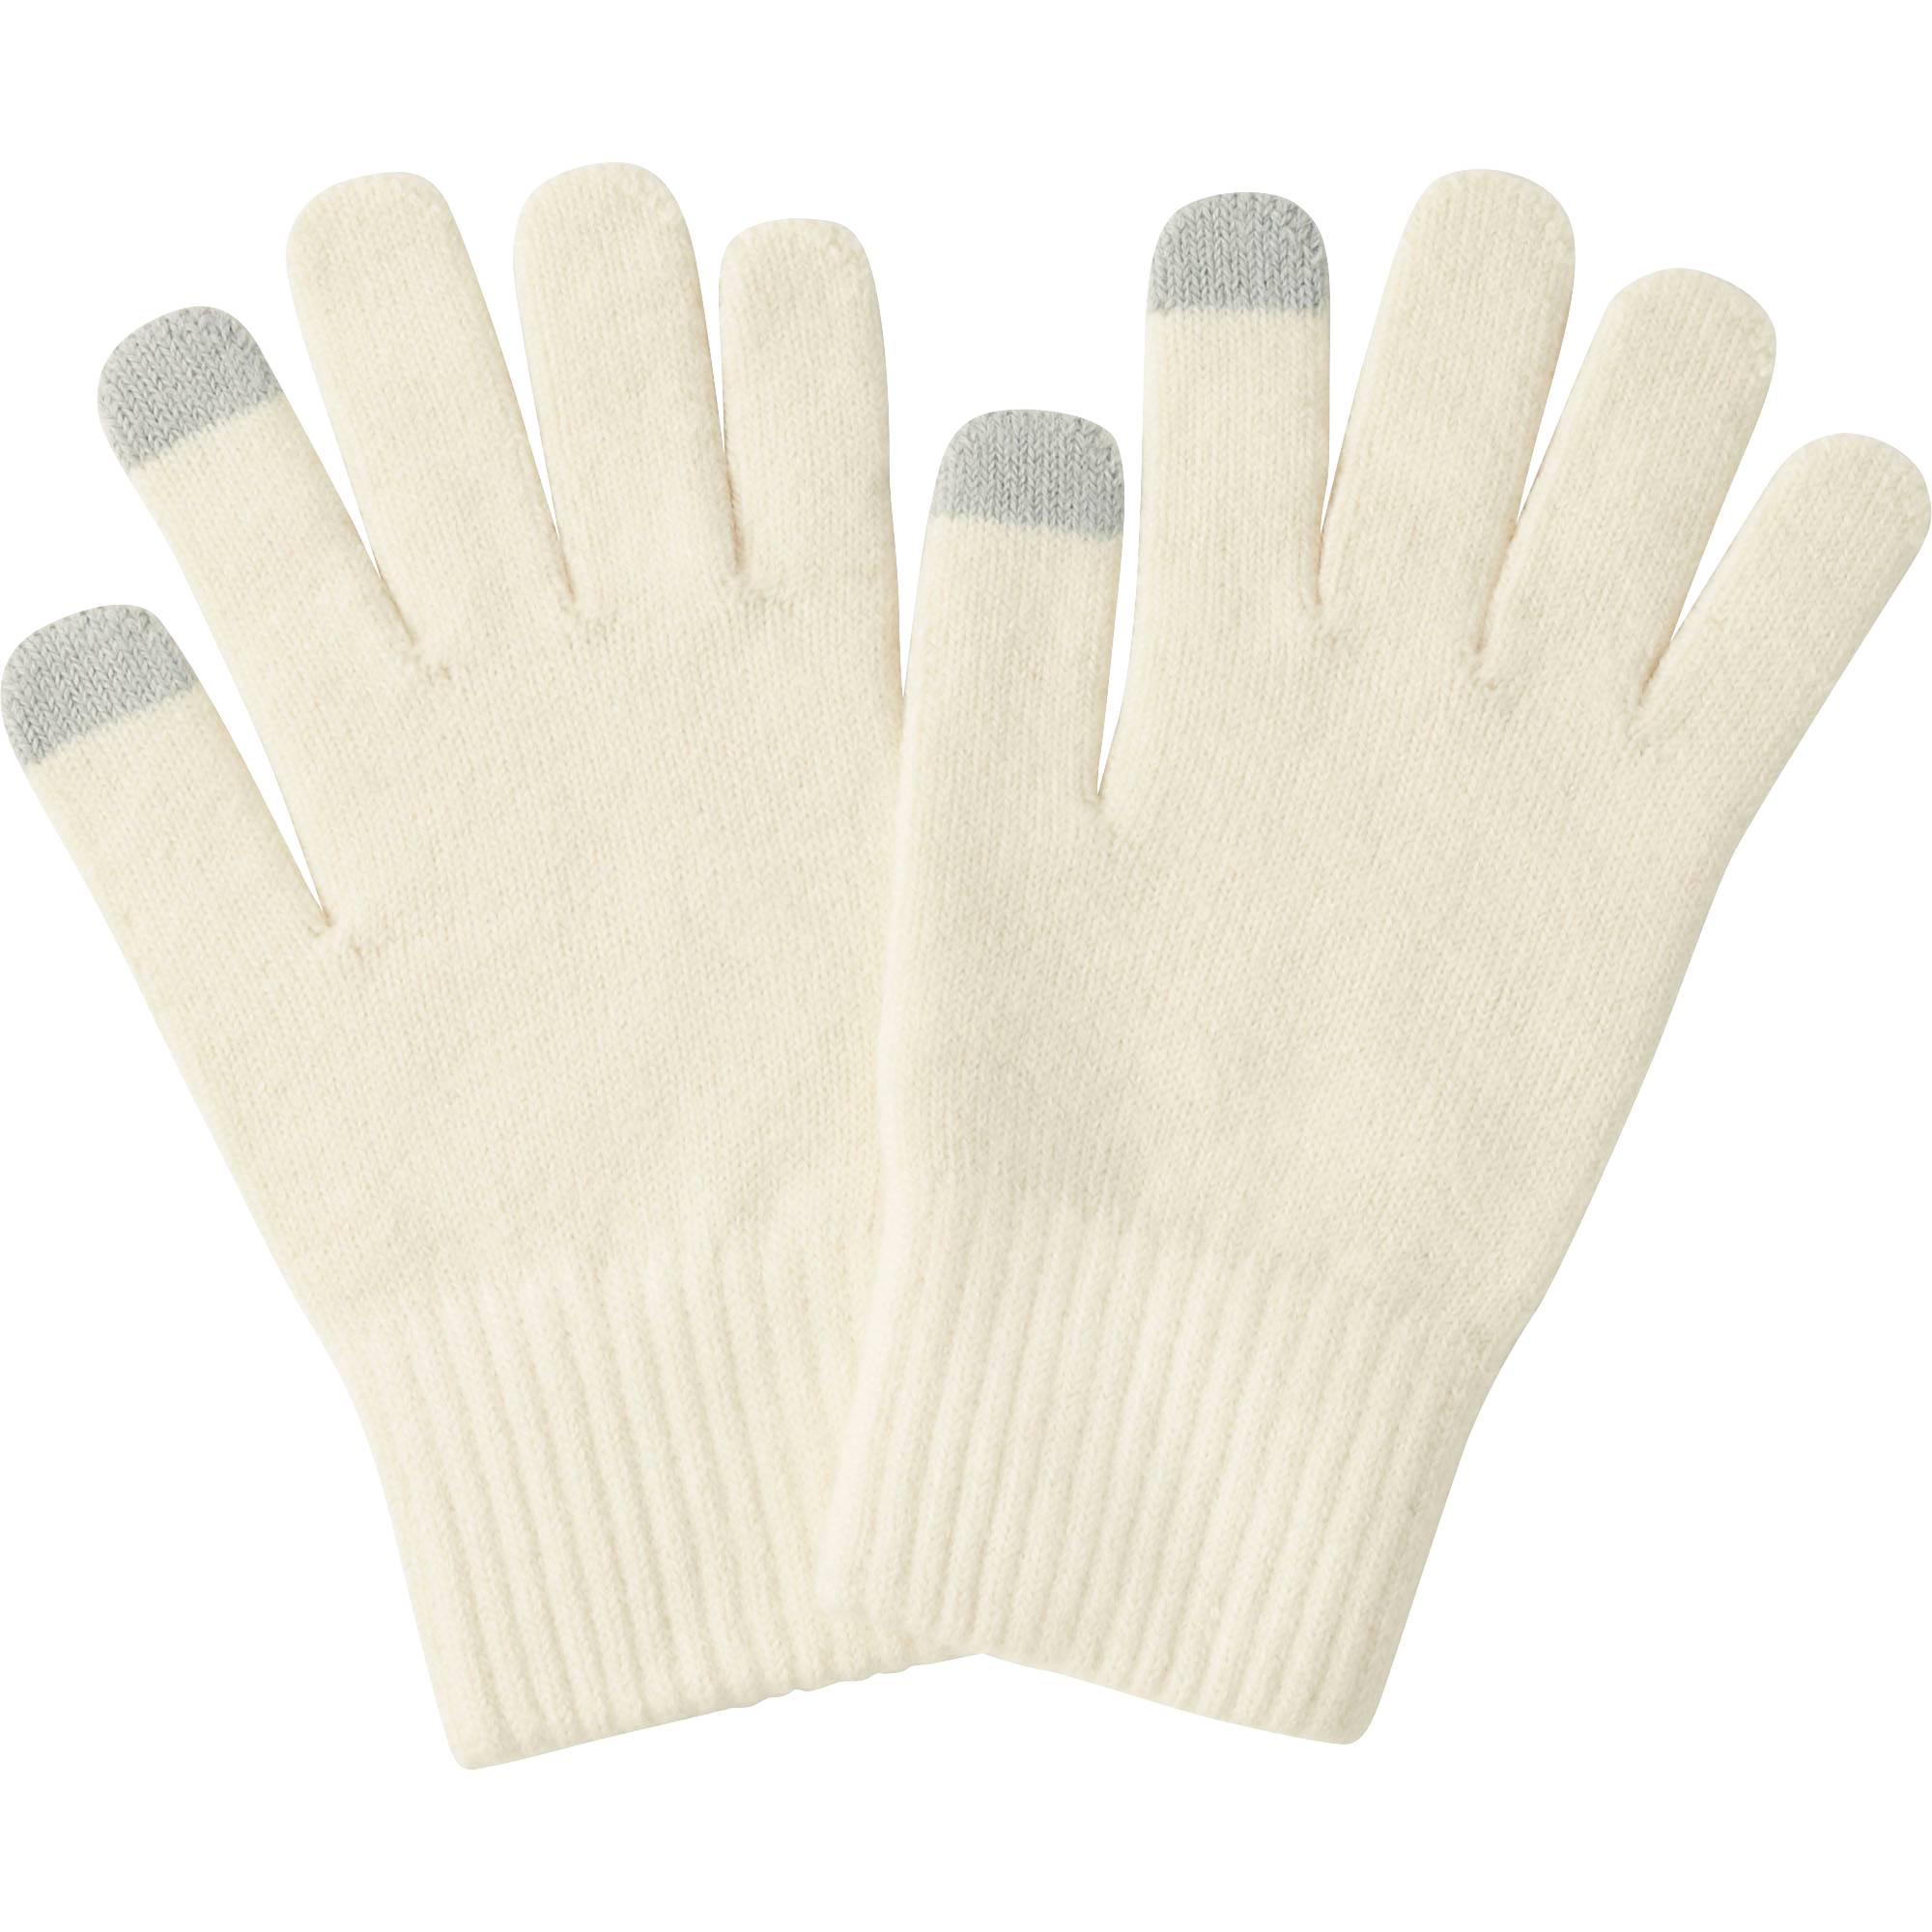 heattech knitted gloves, light gray, small MDKRMNK